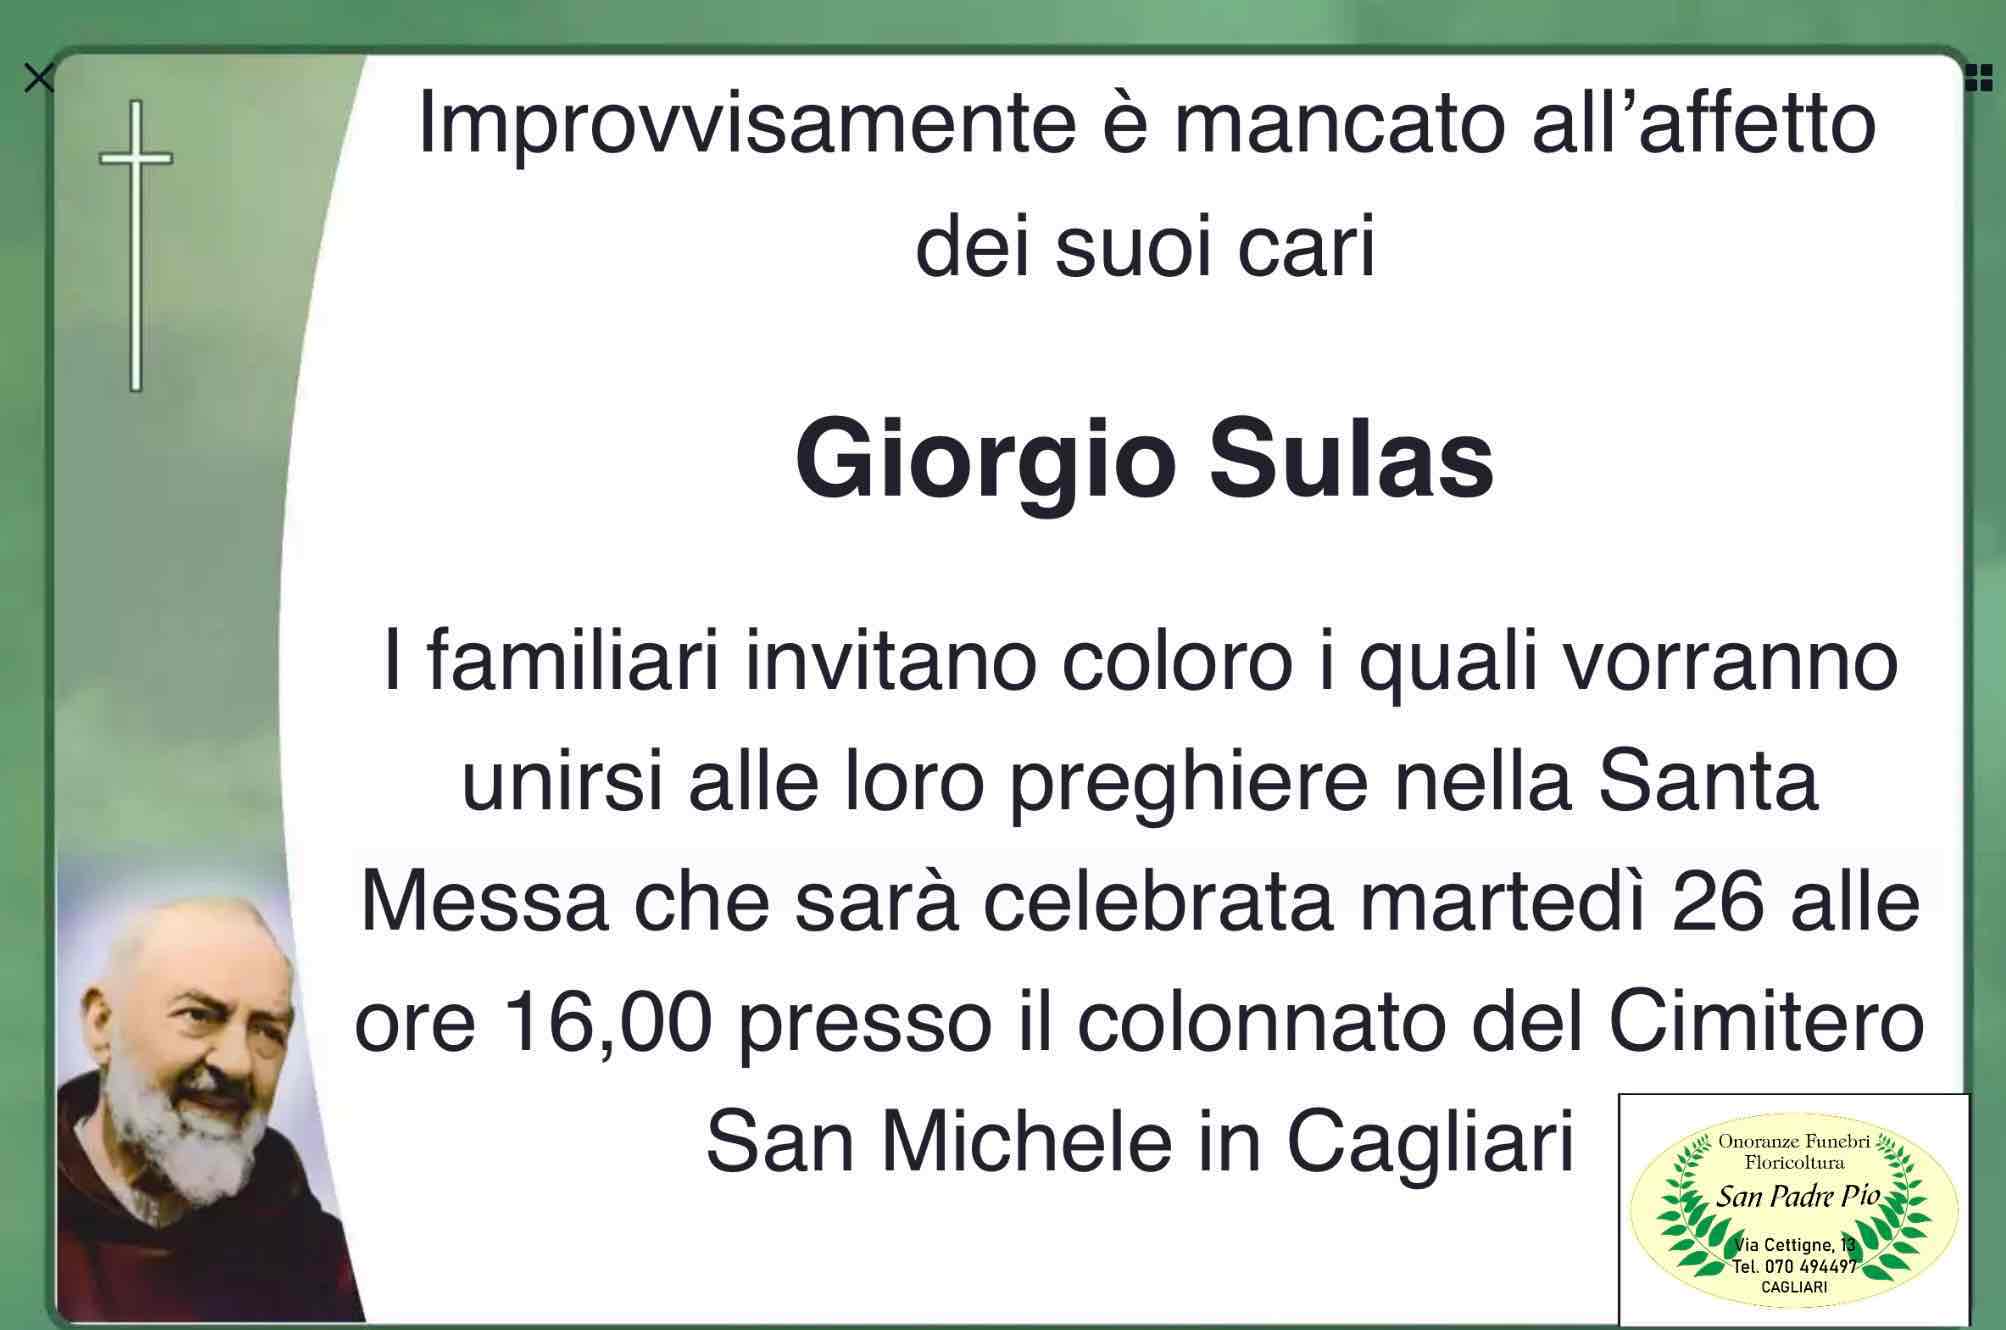 Giorgio Sulas